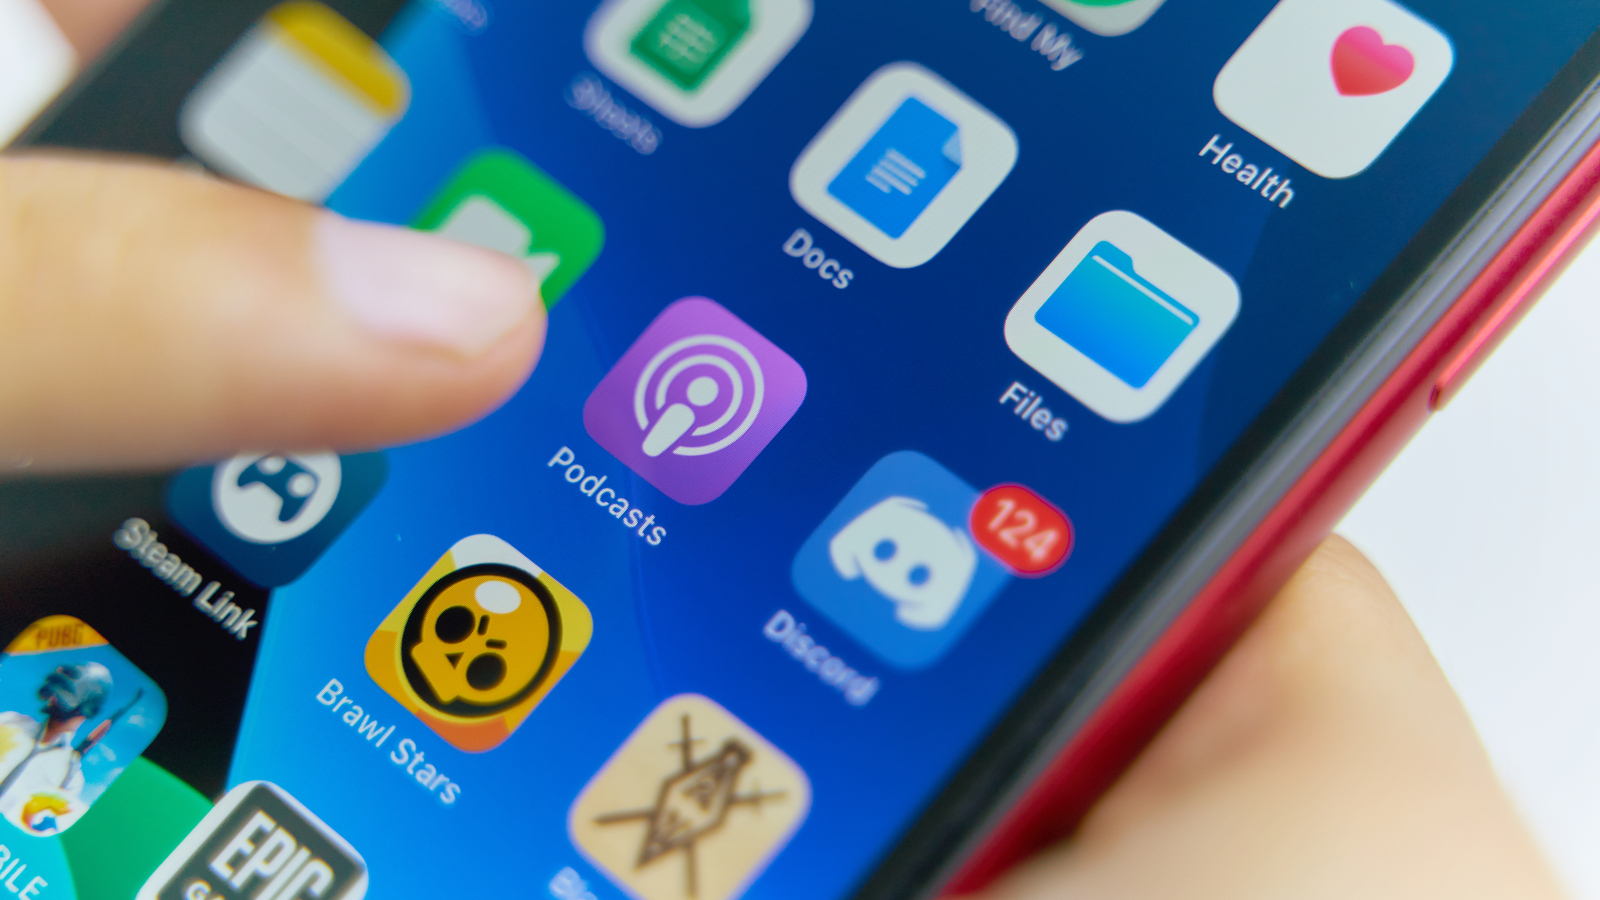 Apple Podcast aurait augmenté son nombre d'abonnés payants de 300%